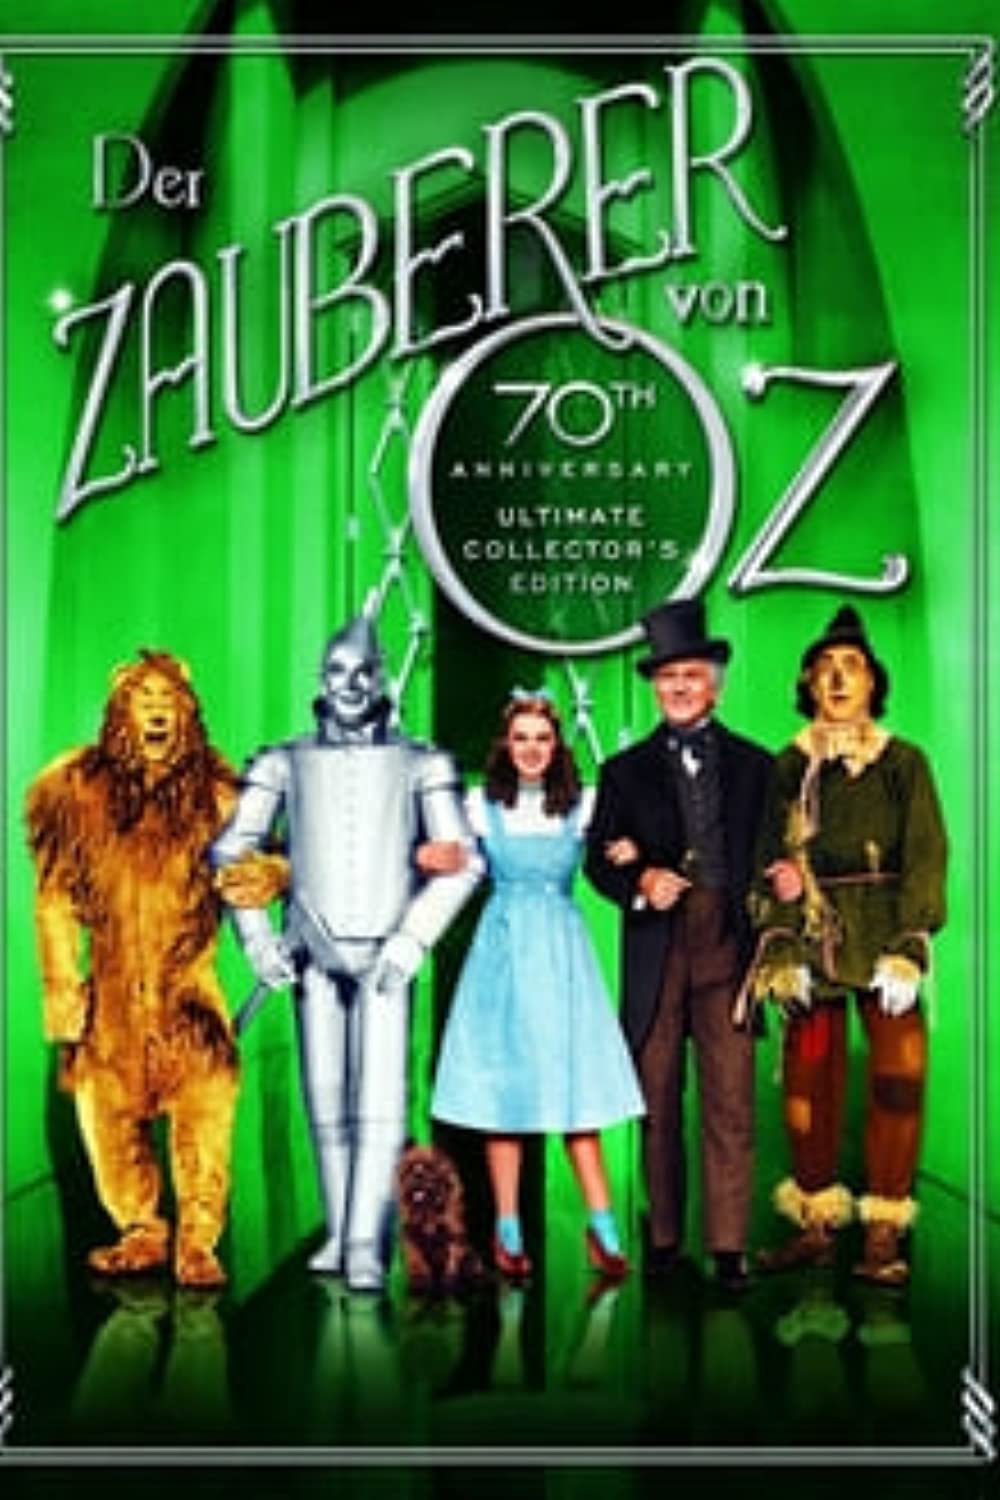 Filmbeschreibung zu The Wizard of Oz